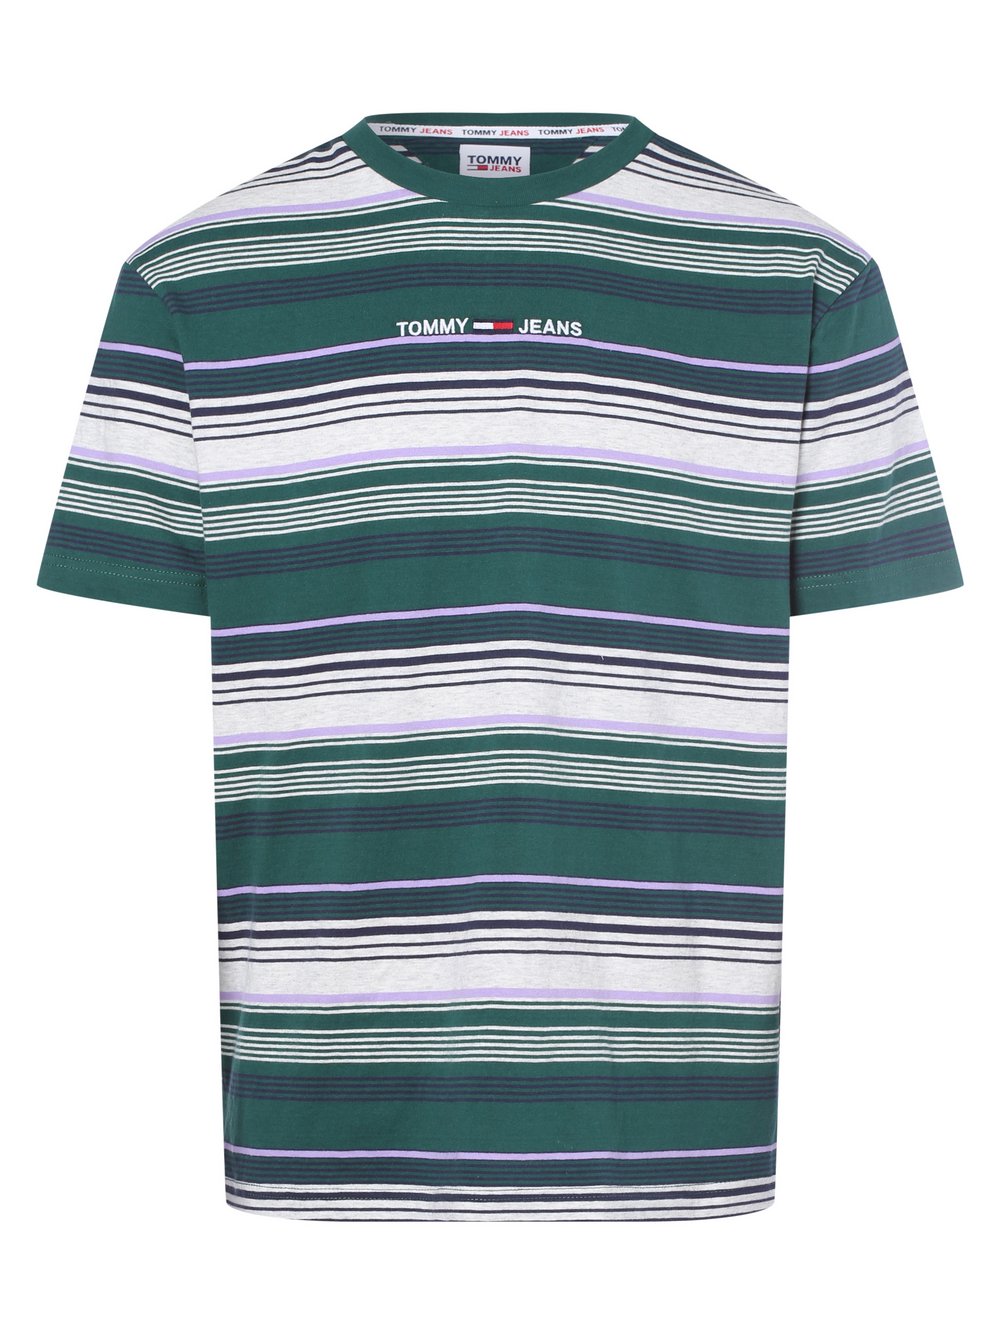 Tommy Jeans - T-shirt męski, zielony|wielokolorowy